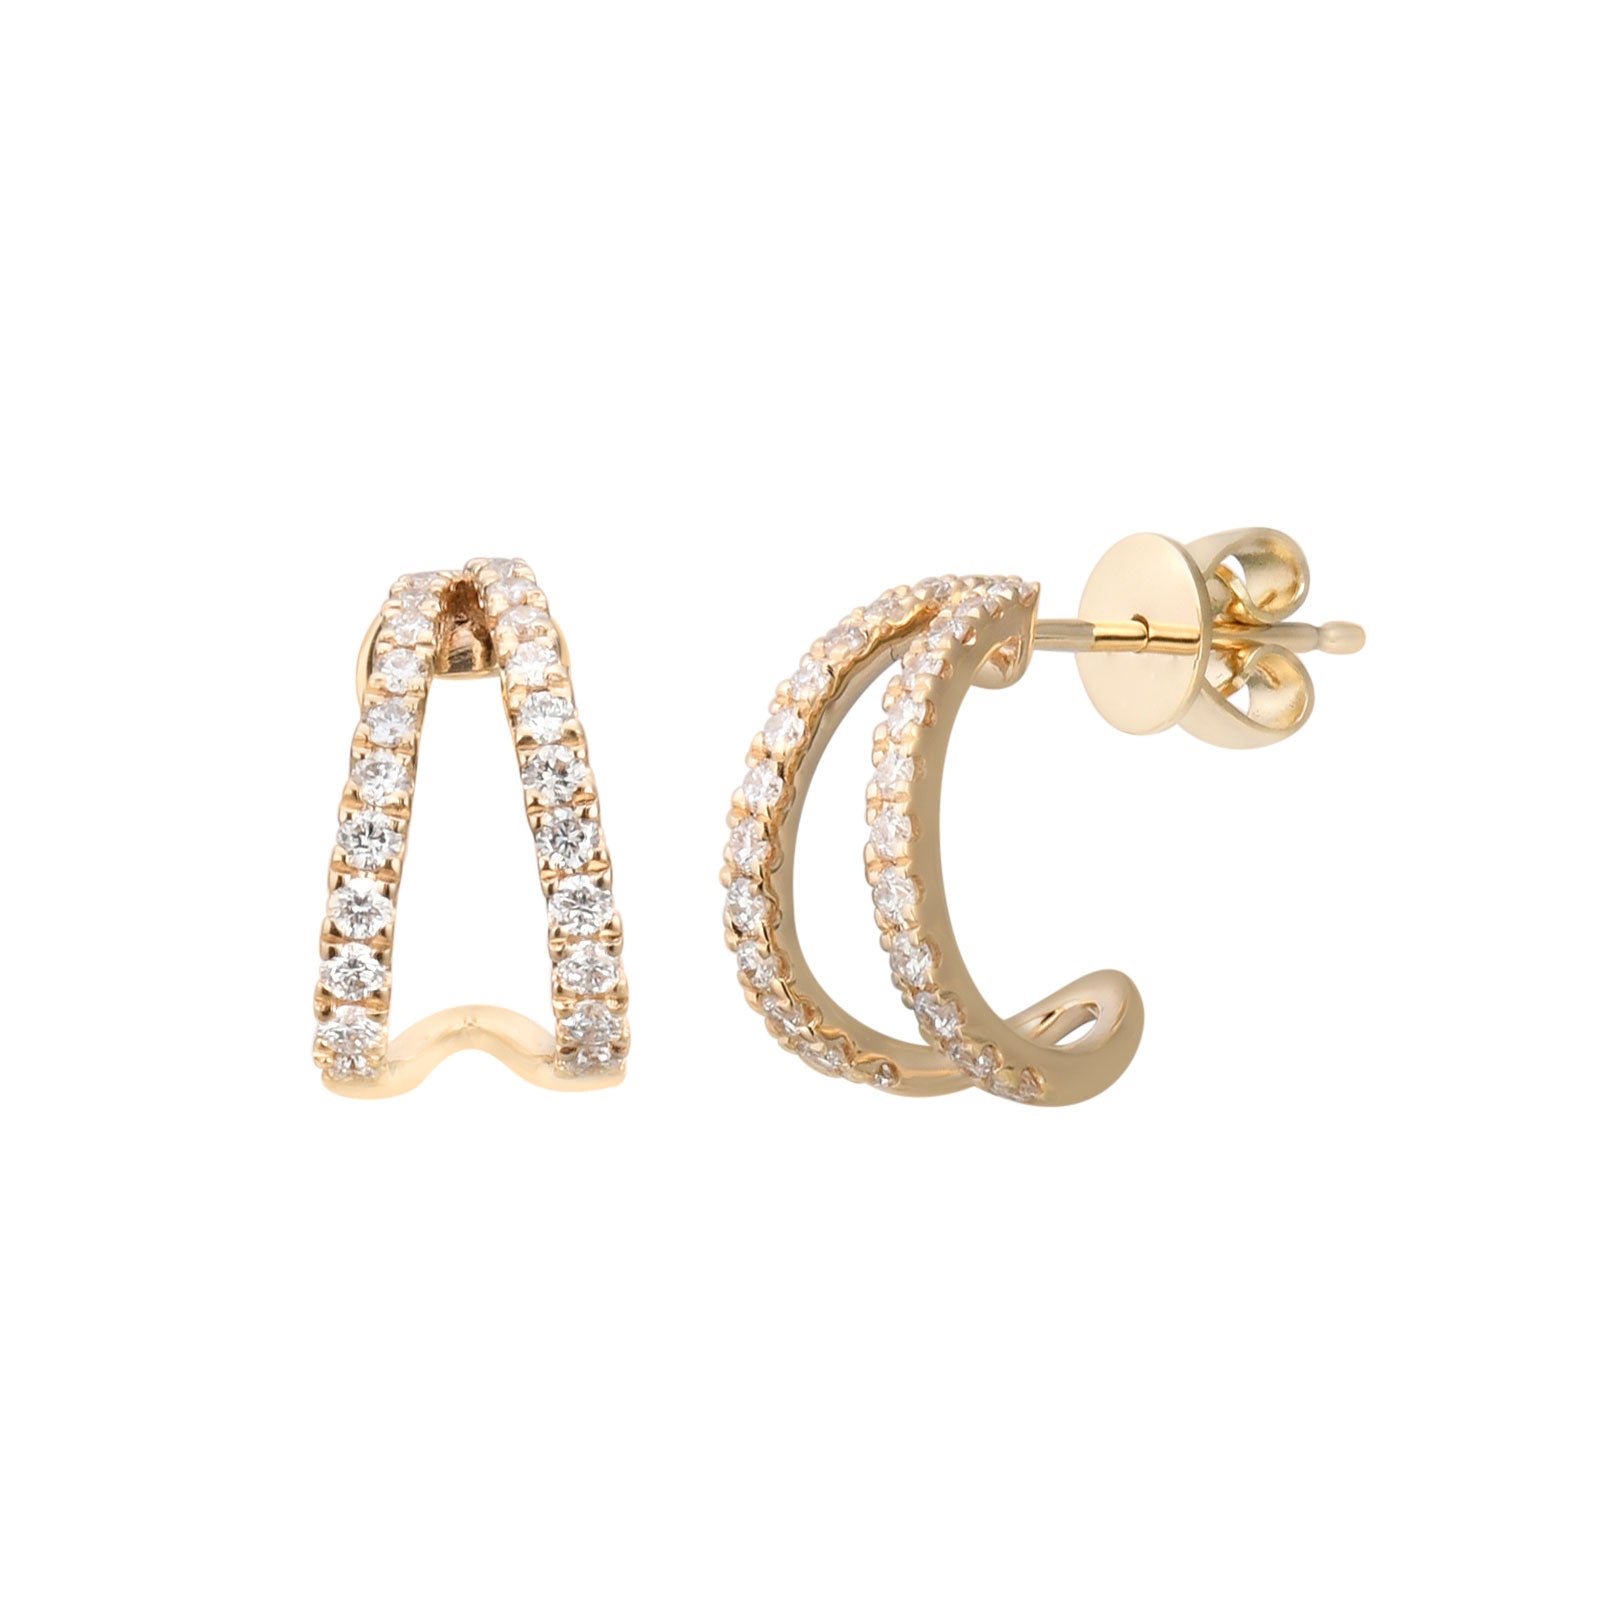 Midsumdr Earrings For Women,Pearl Tassel Earrings Design Asymmetric Chain  Rhinestone Ear Wire Jewelry Silver Gold Hoop Earrings Stud Earrings -  Walmart.com